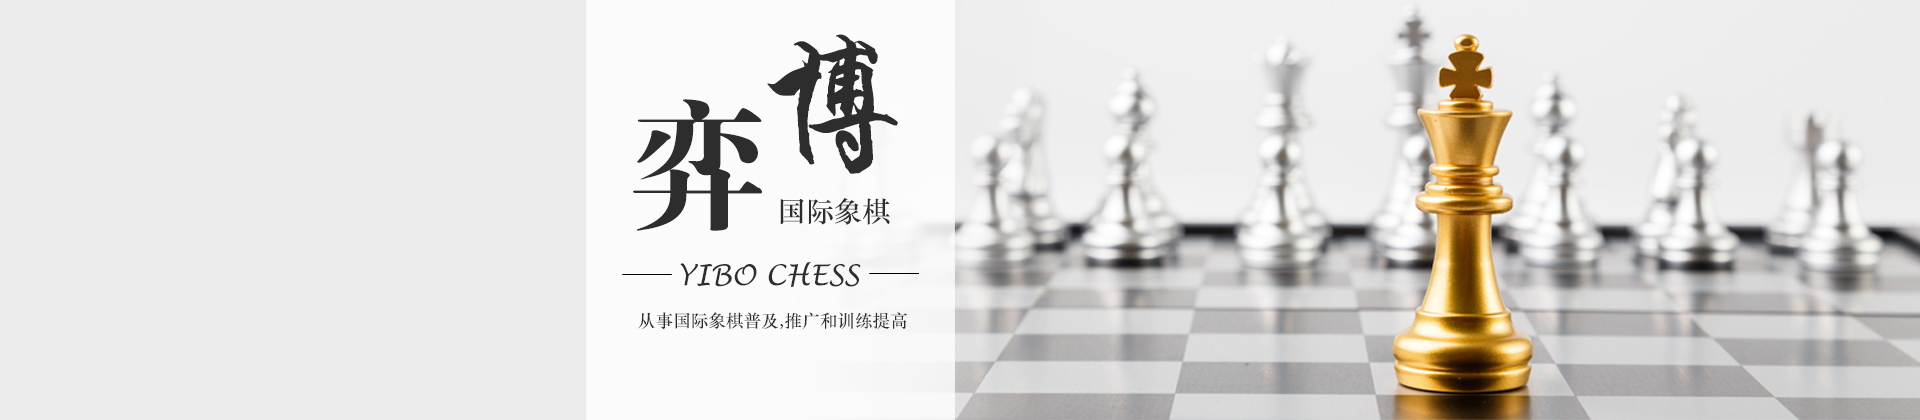 广州弈博国际象棋培训